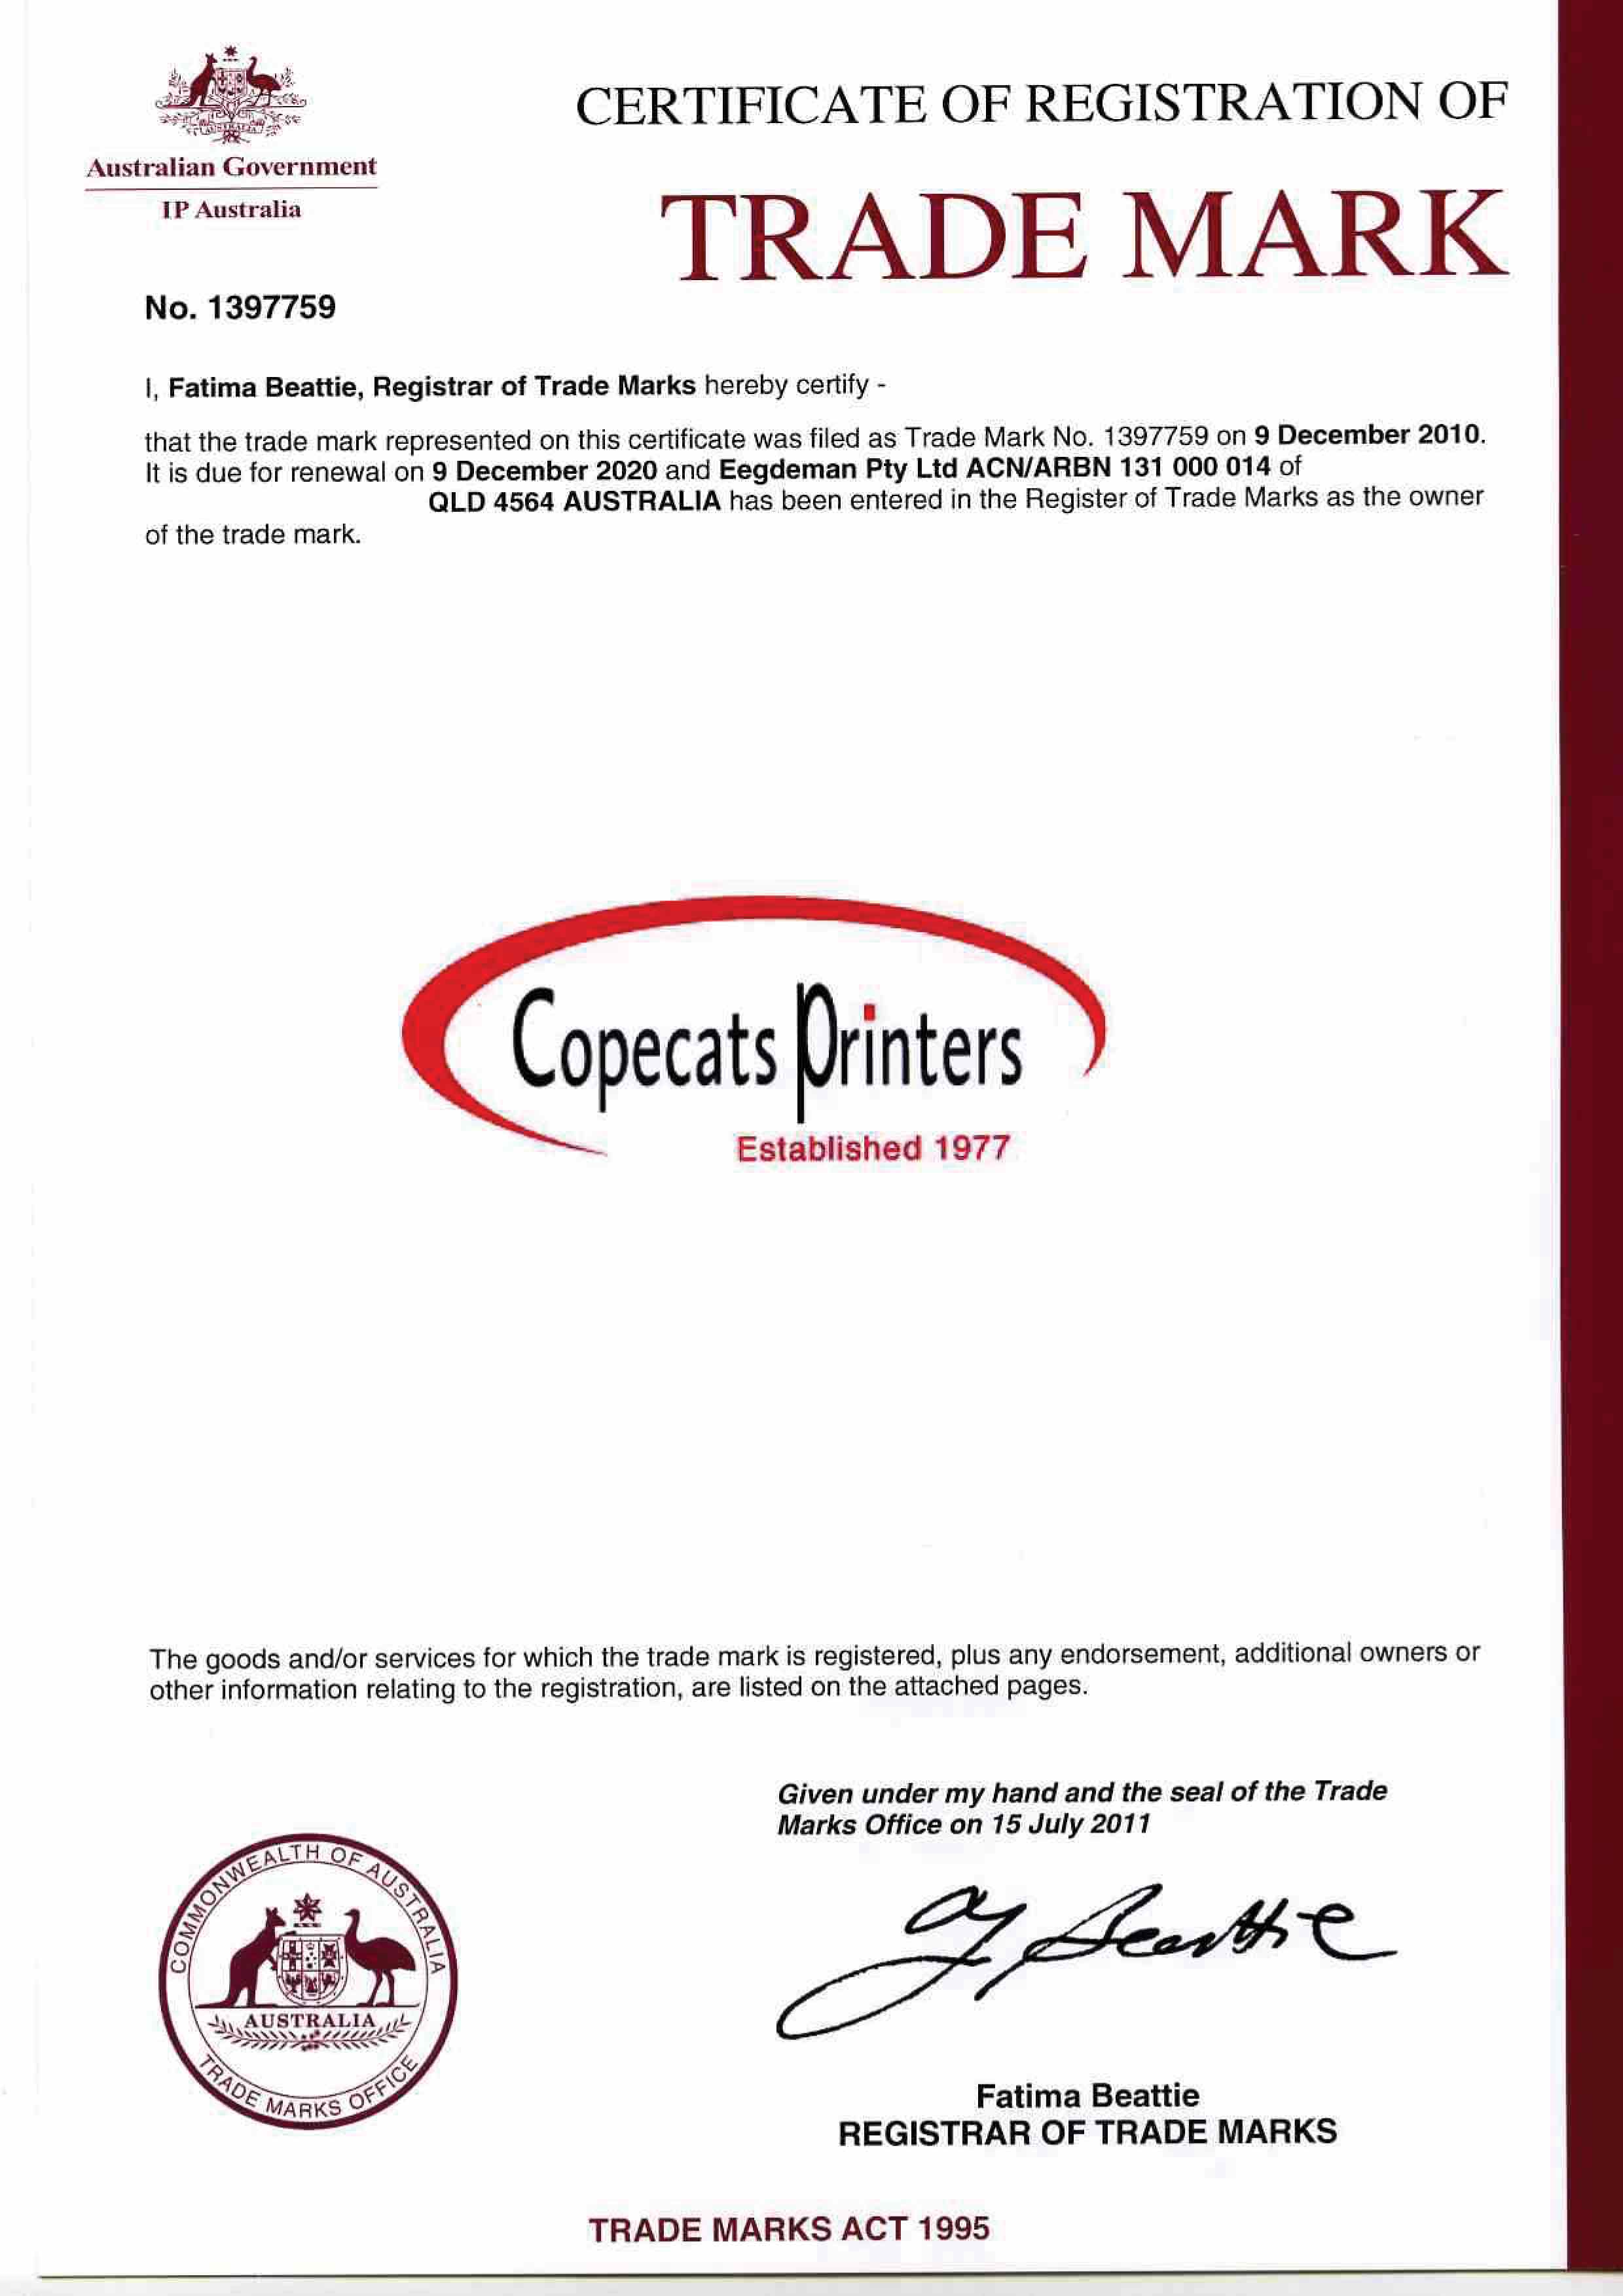 Copecats Trademark Certificate